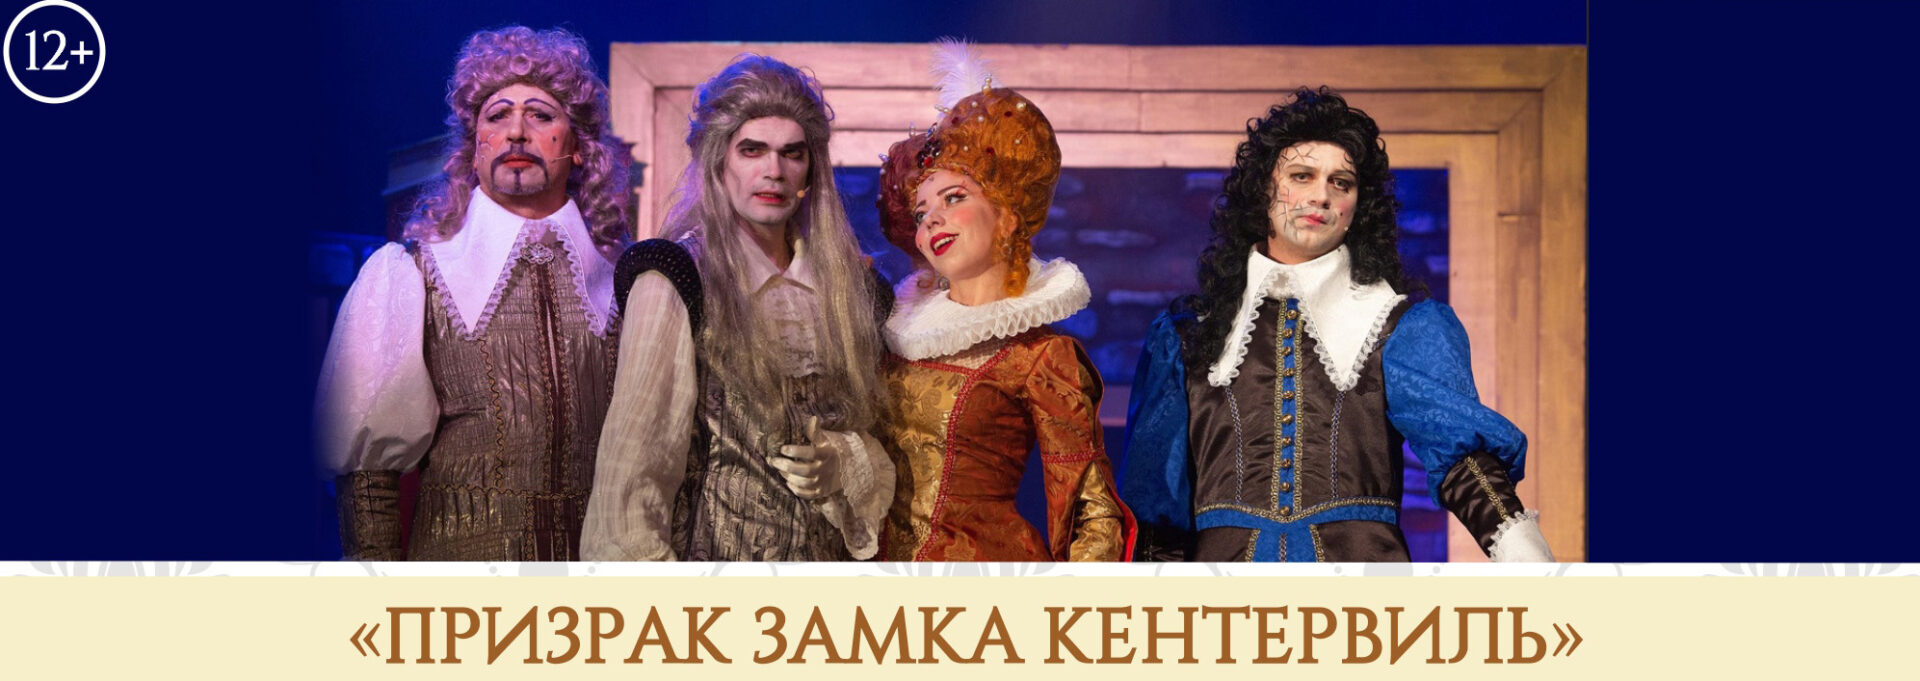 Рязанский музыкальный театр представил репертуар на апрель